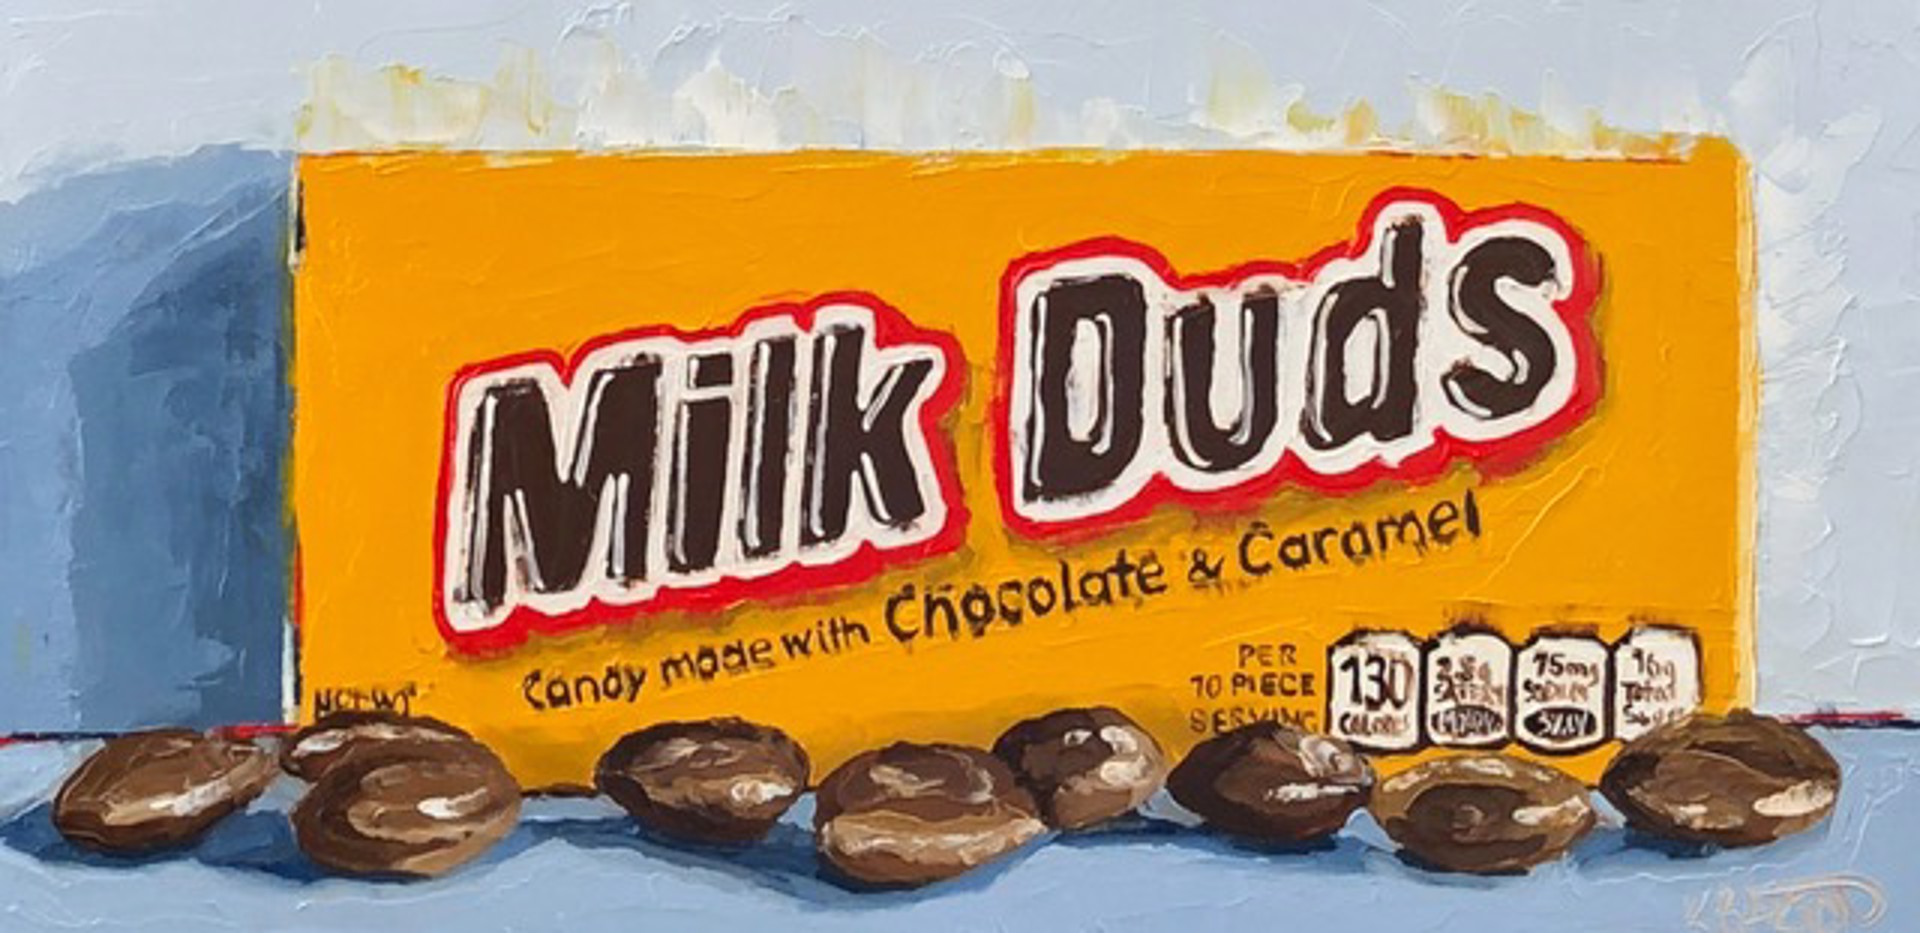 Yummy Milk Duds by Karen Barton-Gray